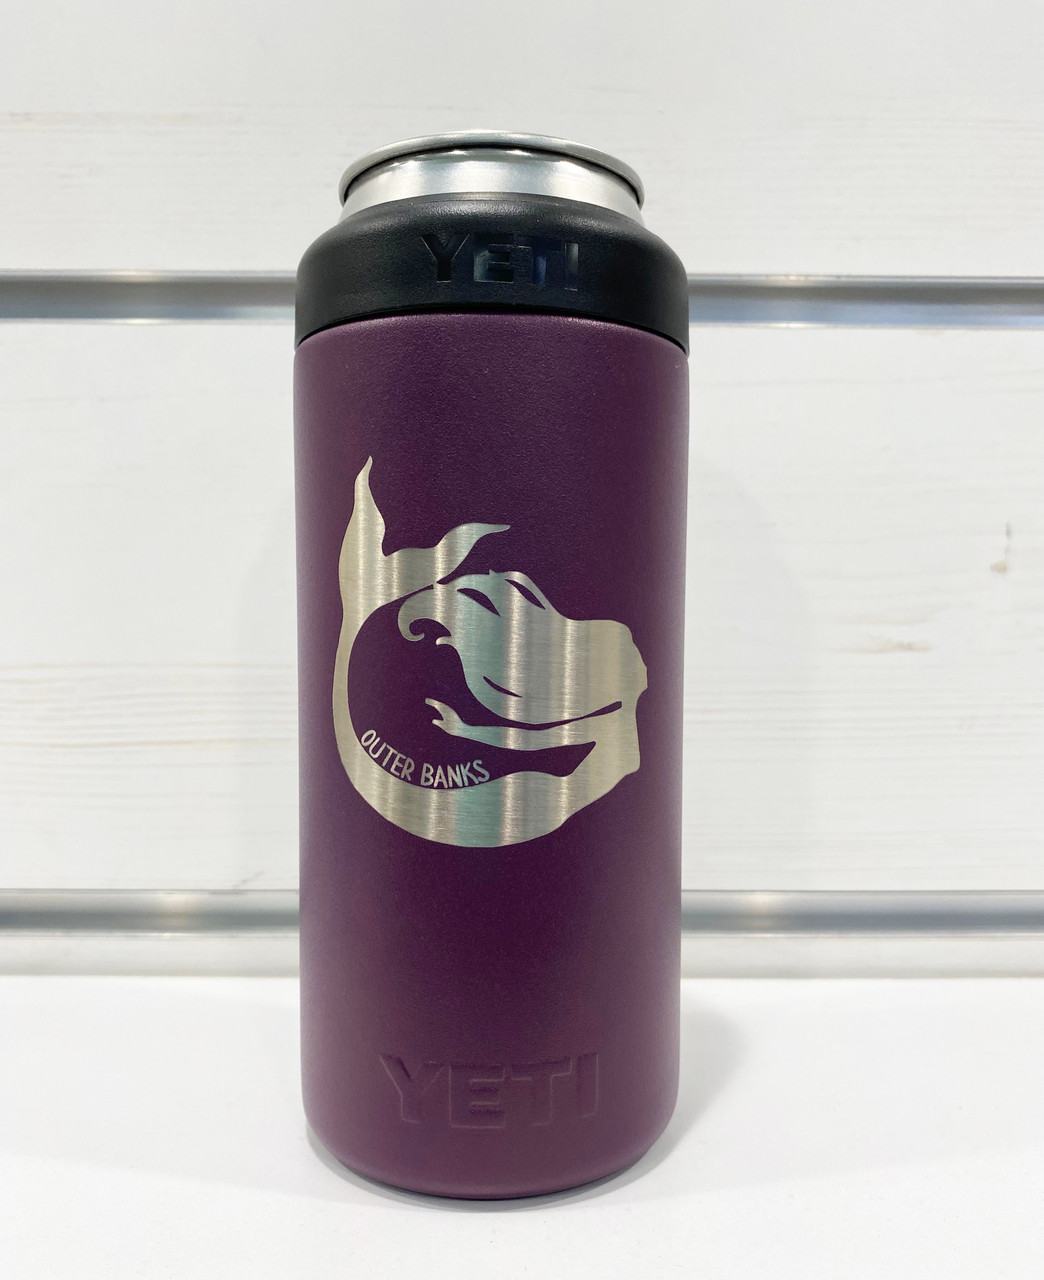 REAL YETI 36 oz. Laser Engraved Nordic Blue Yeti Rambler Bottle with Chug  Cap Personalized Vacuum Insulated YETI